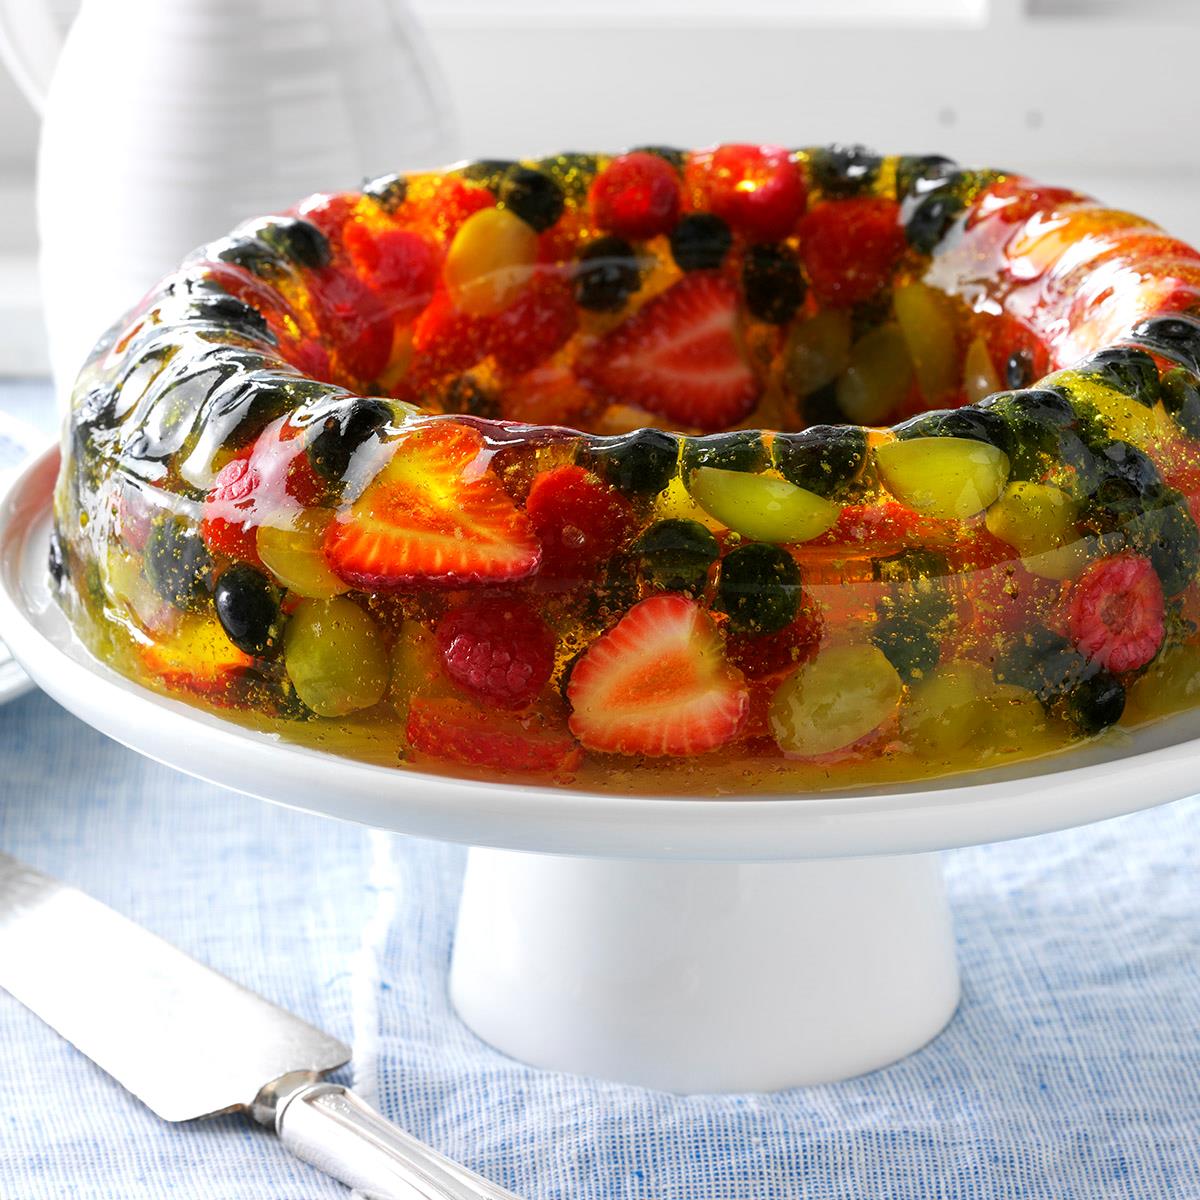 Details more than 125 gelatin fruit cake super hot - kidsdream.edu.vn